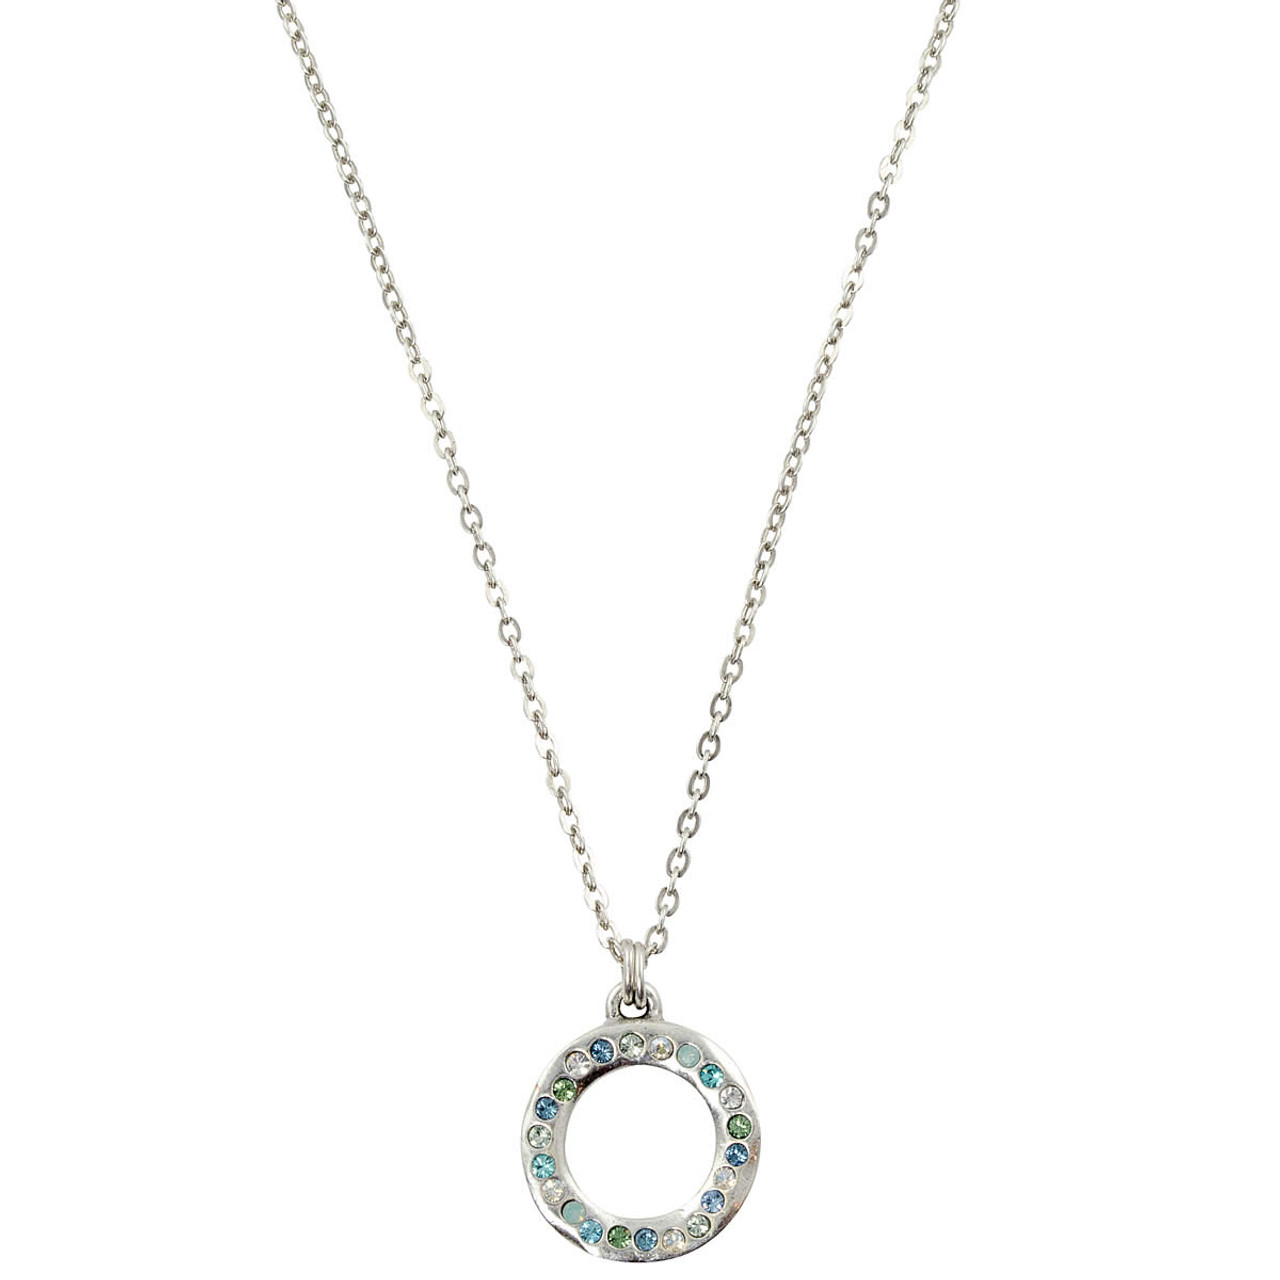 Patricia Locke Eddy Necklace - Silver, Zephyr | Jewelry